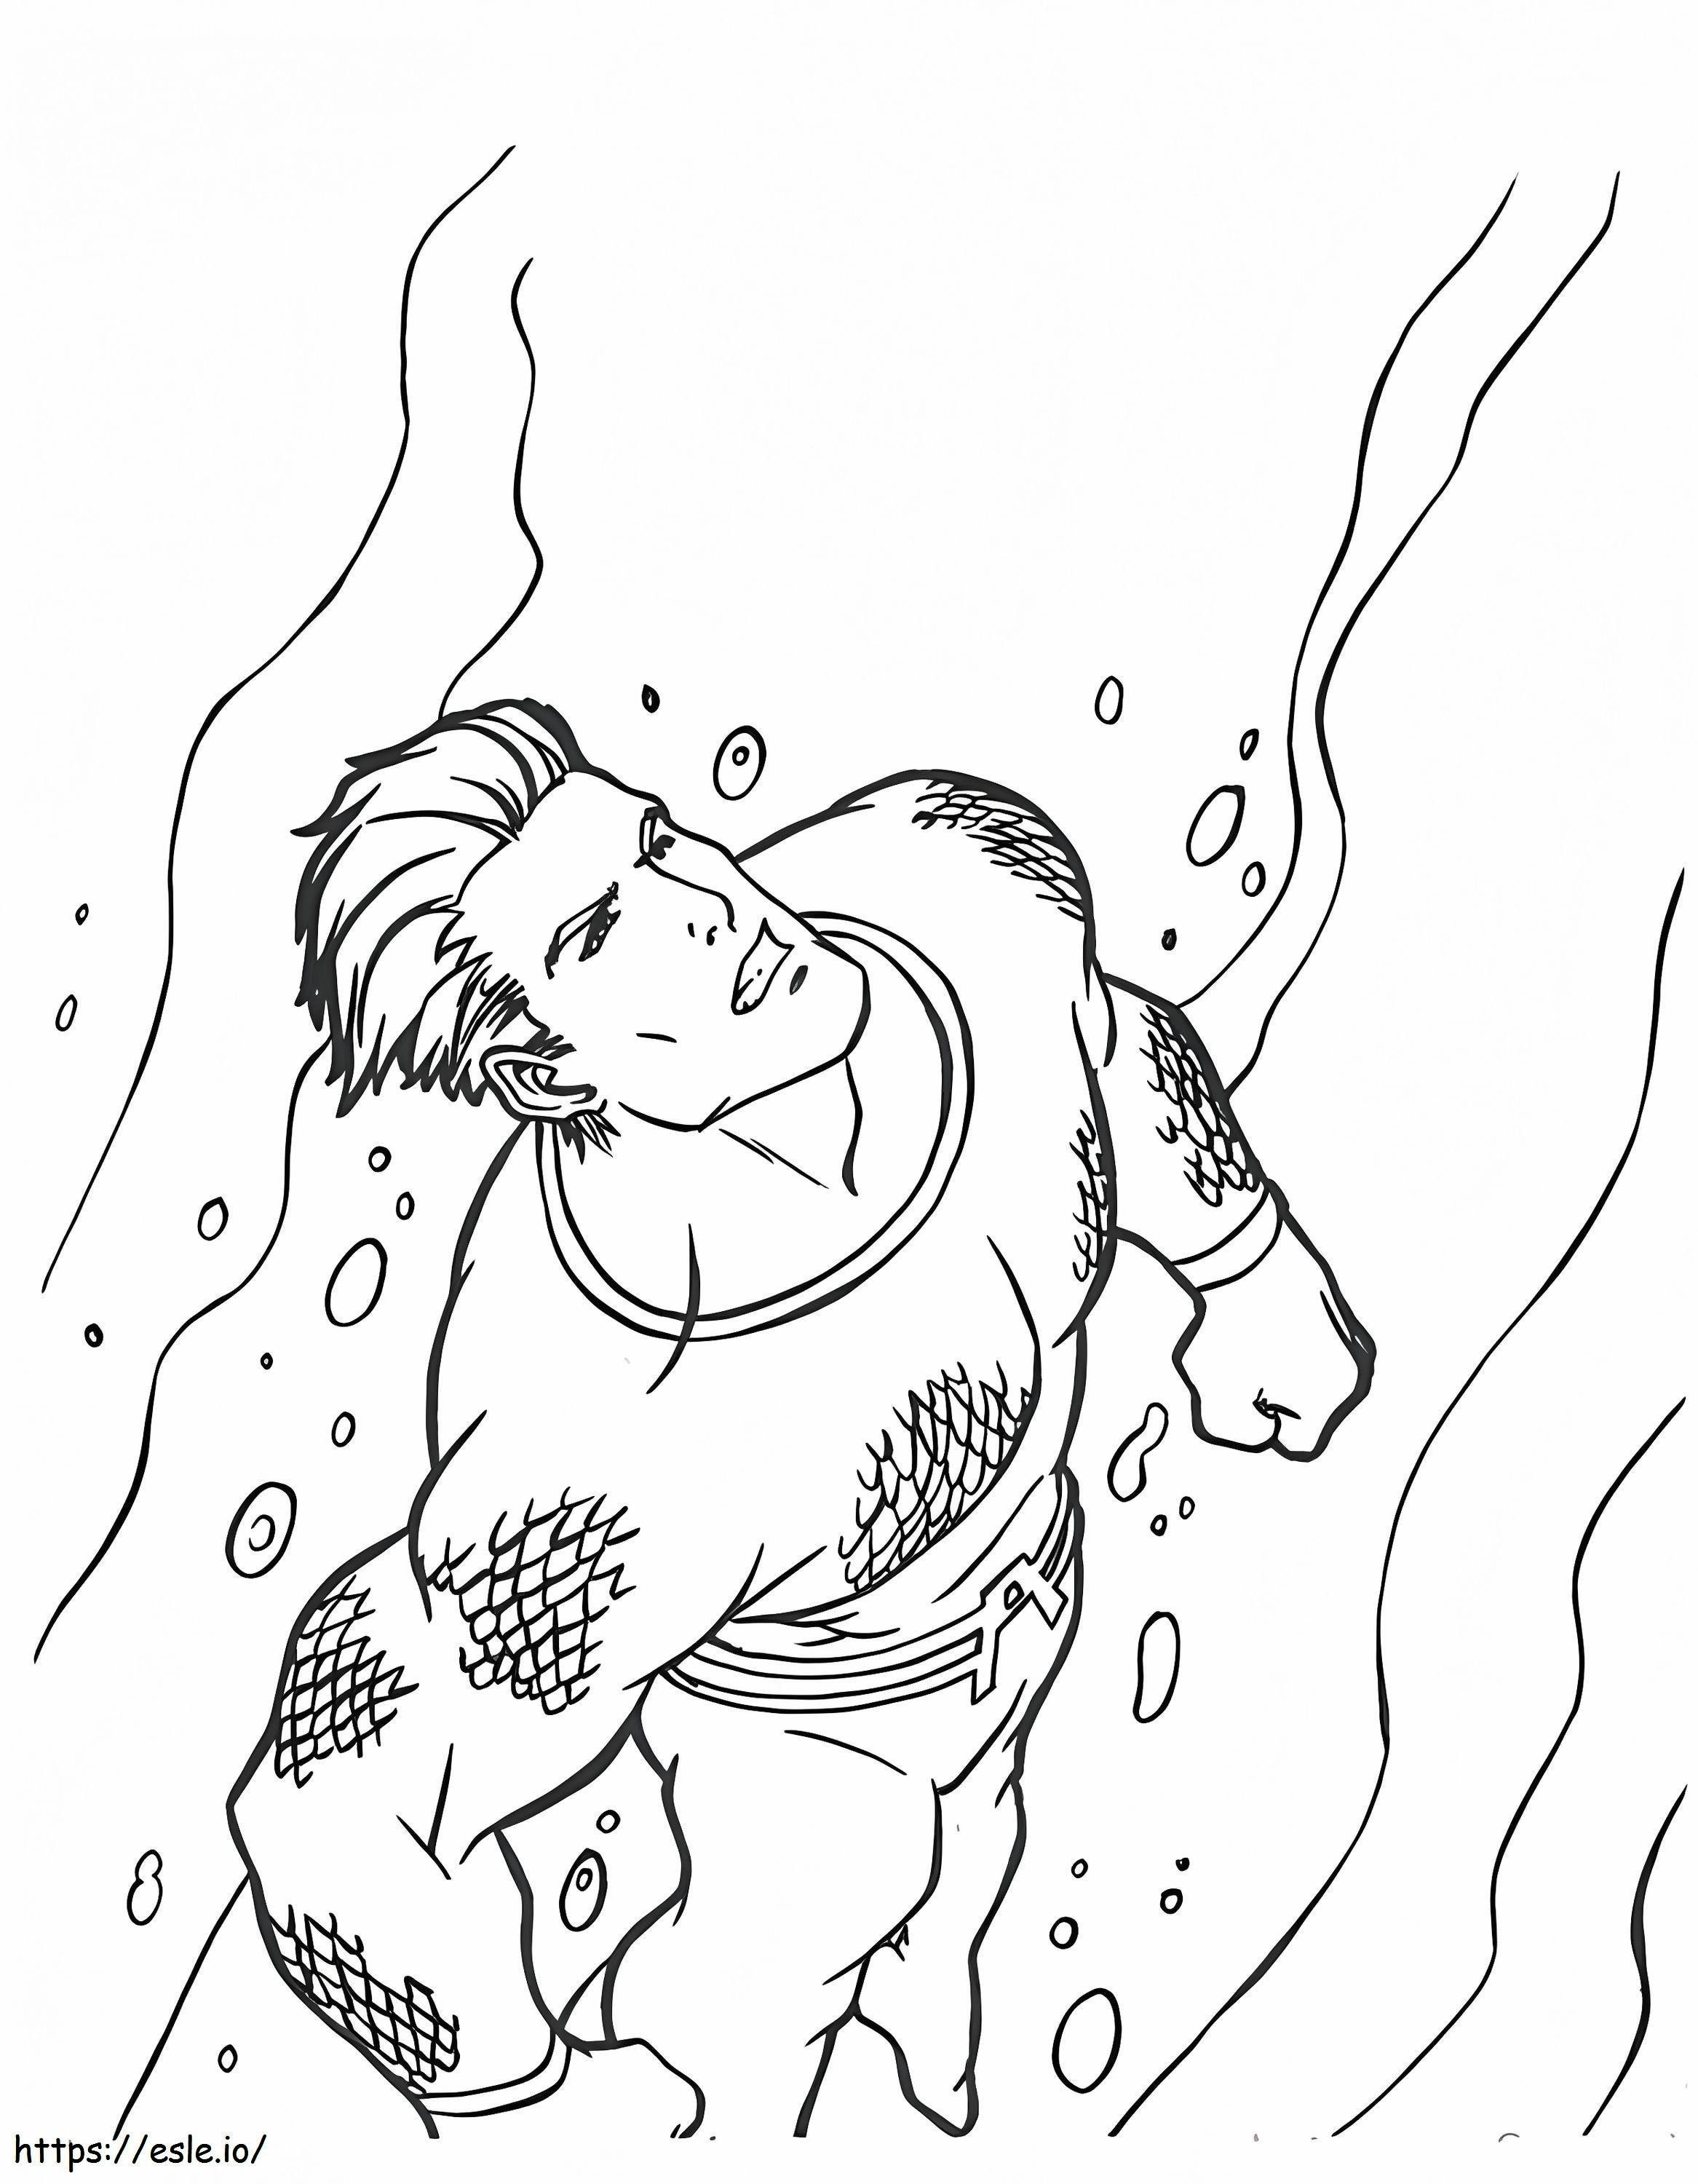 Coloriage Aquaman imprimable à imprimer dessin